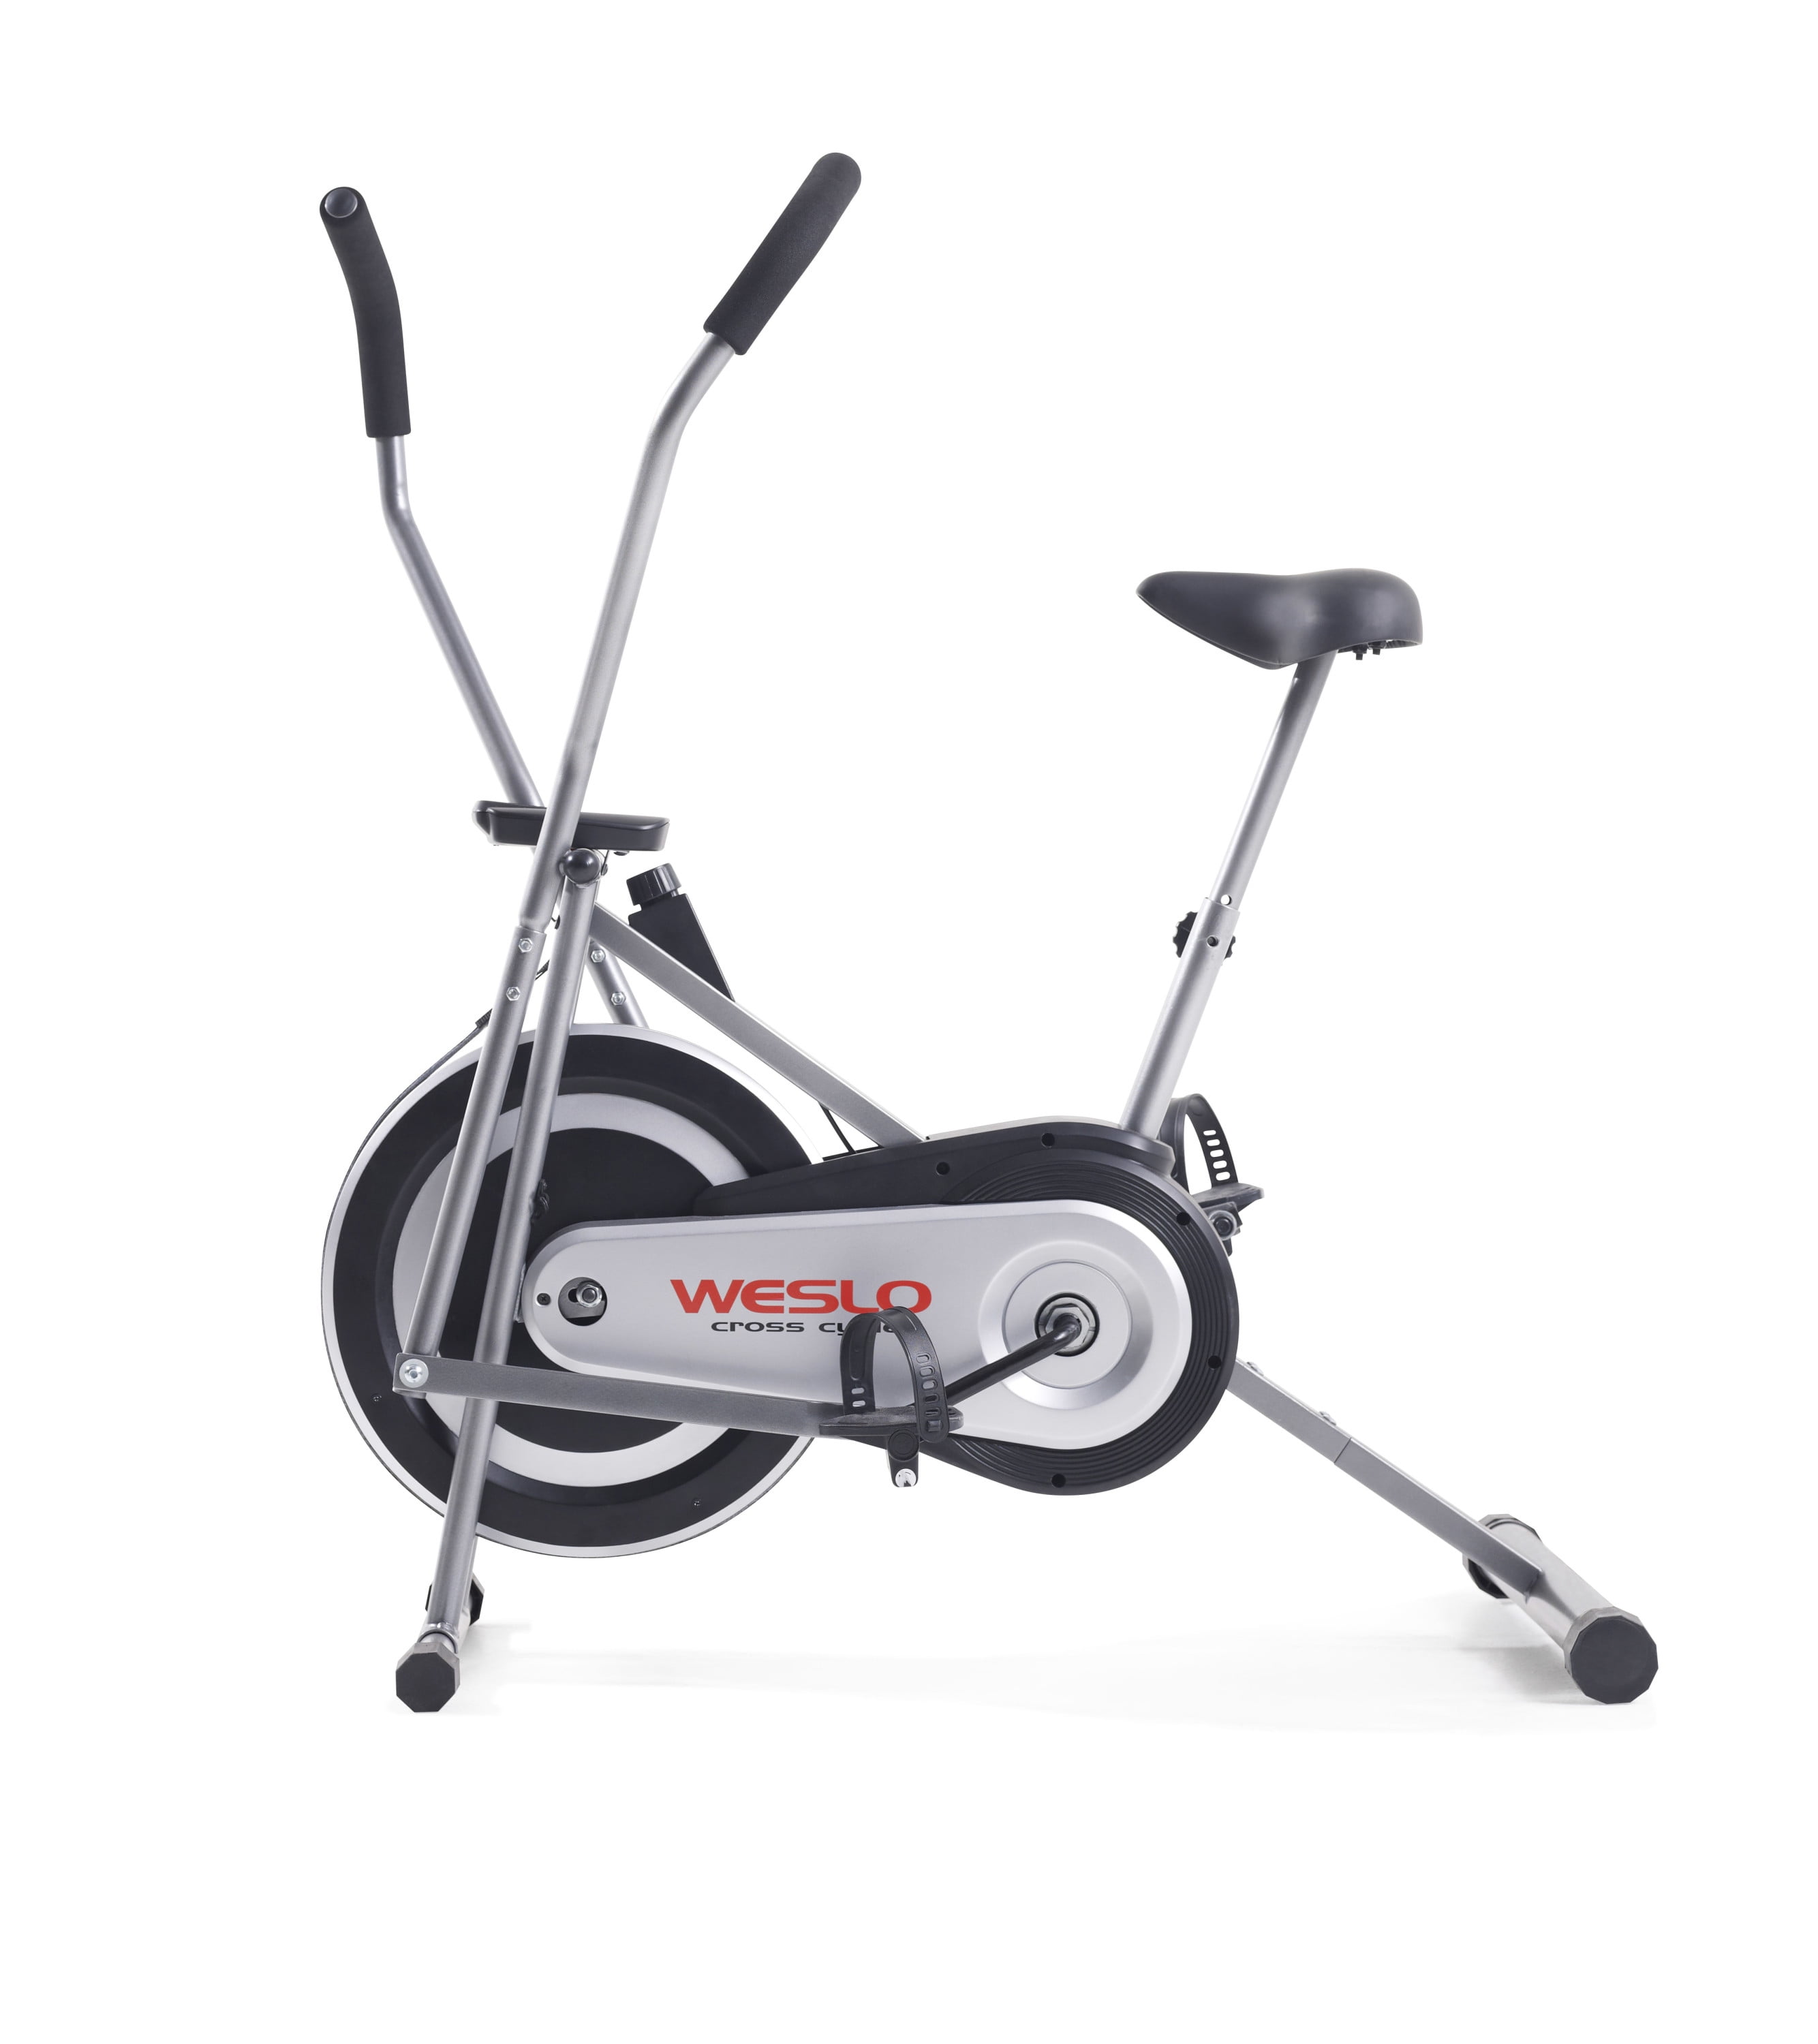 Weslo Cross Cycle Upright Exercise Bike with Padded Saddle 